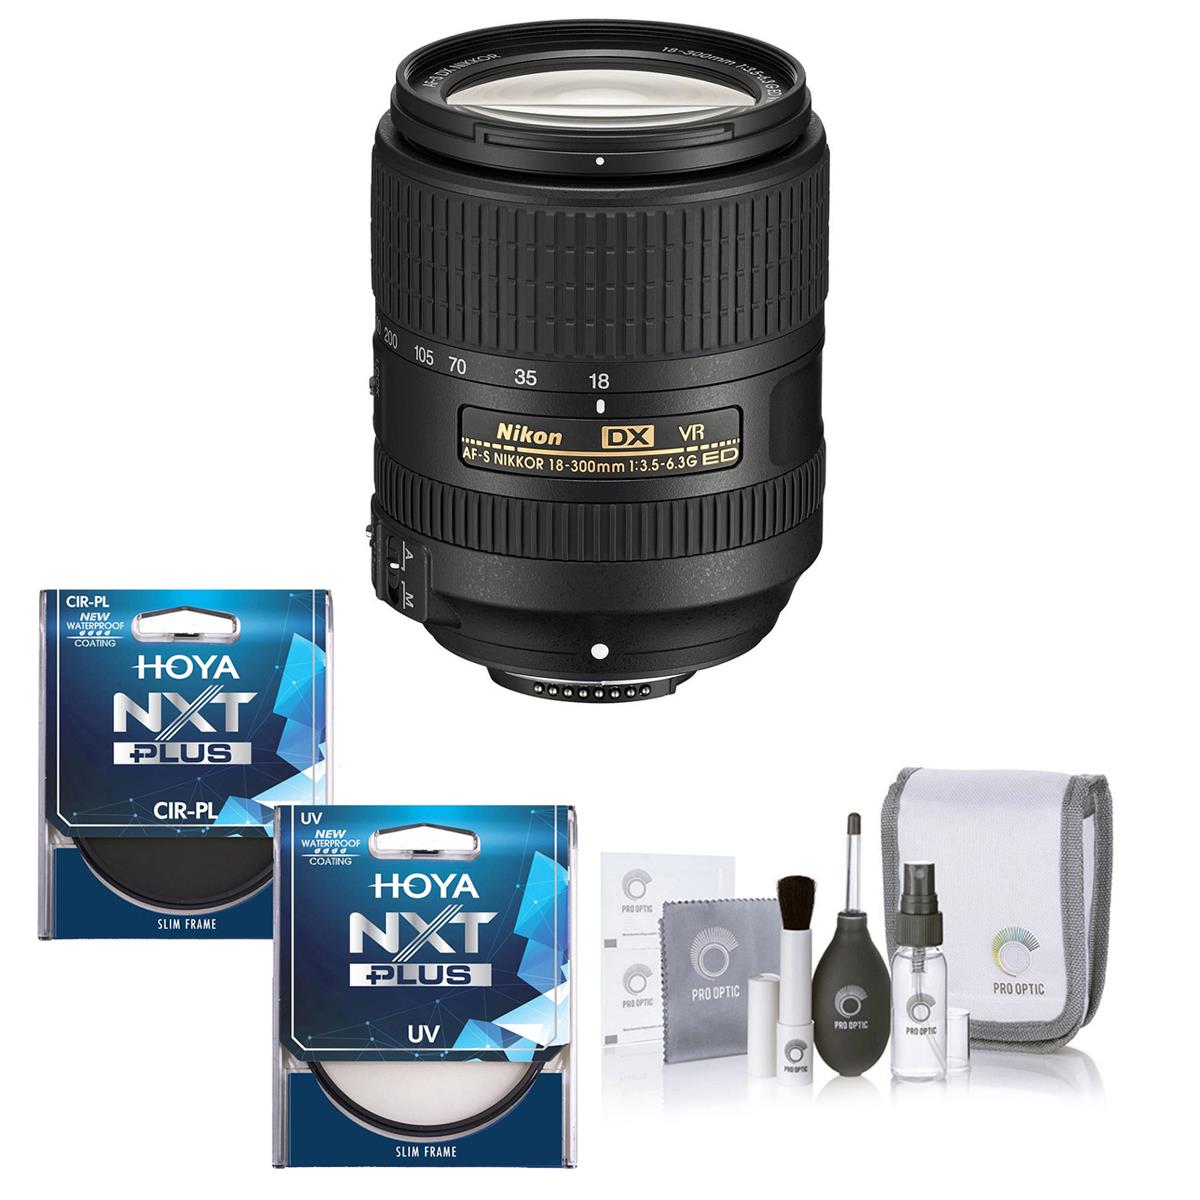 

Nikon 18-300mm f/3.5-6.3G ED IF AF-S DX NIKKOR VR Lens w/67mm CPL+UV Filter Kit